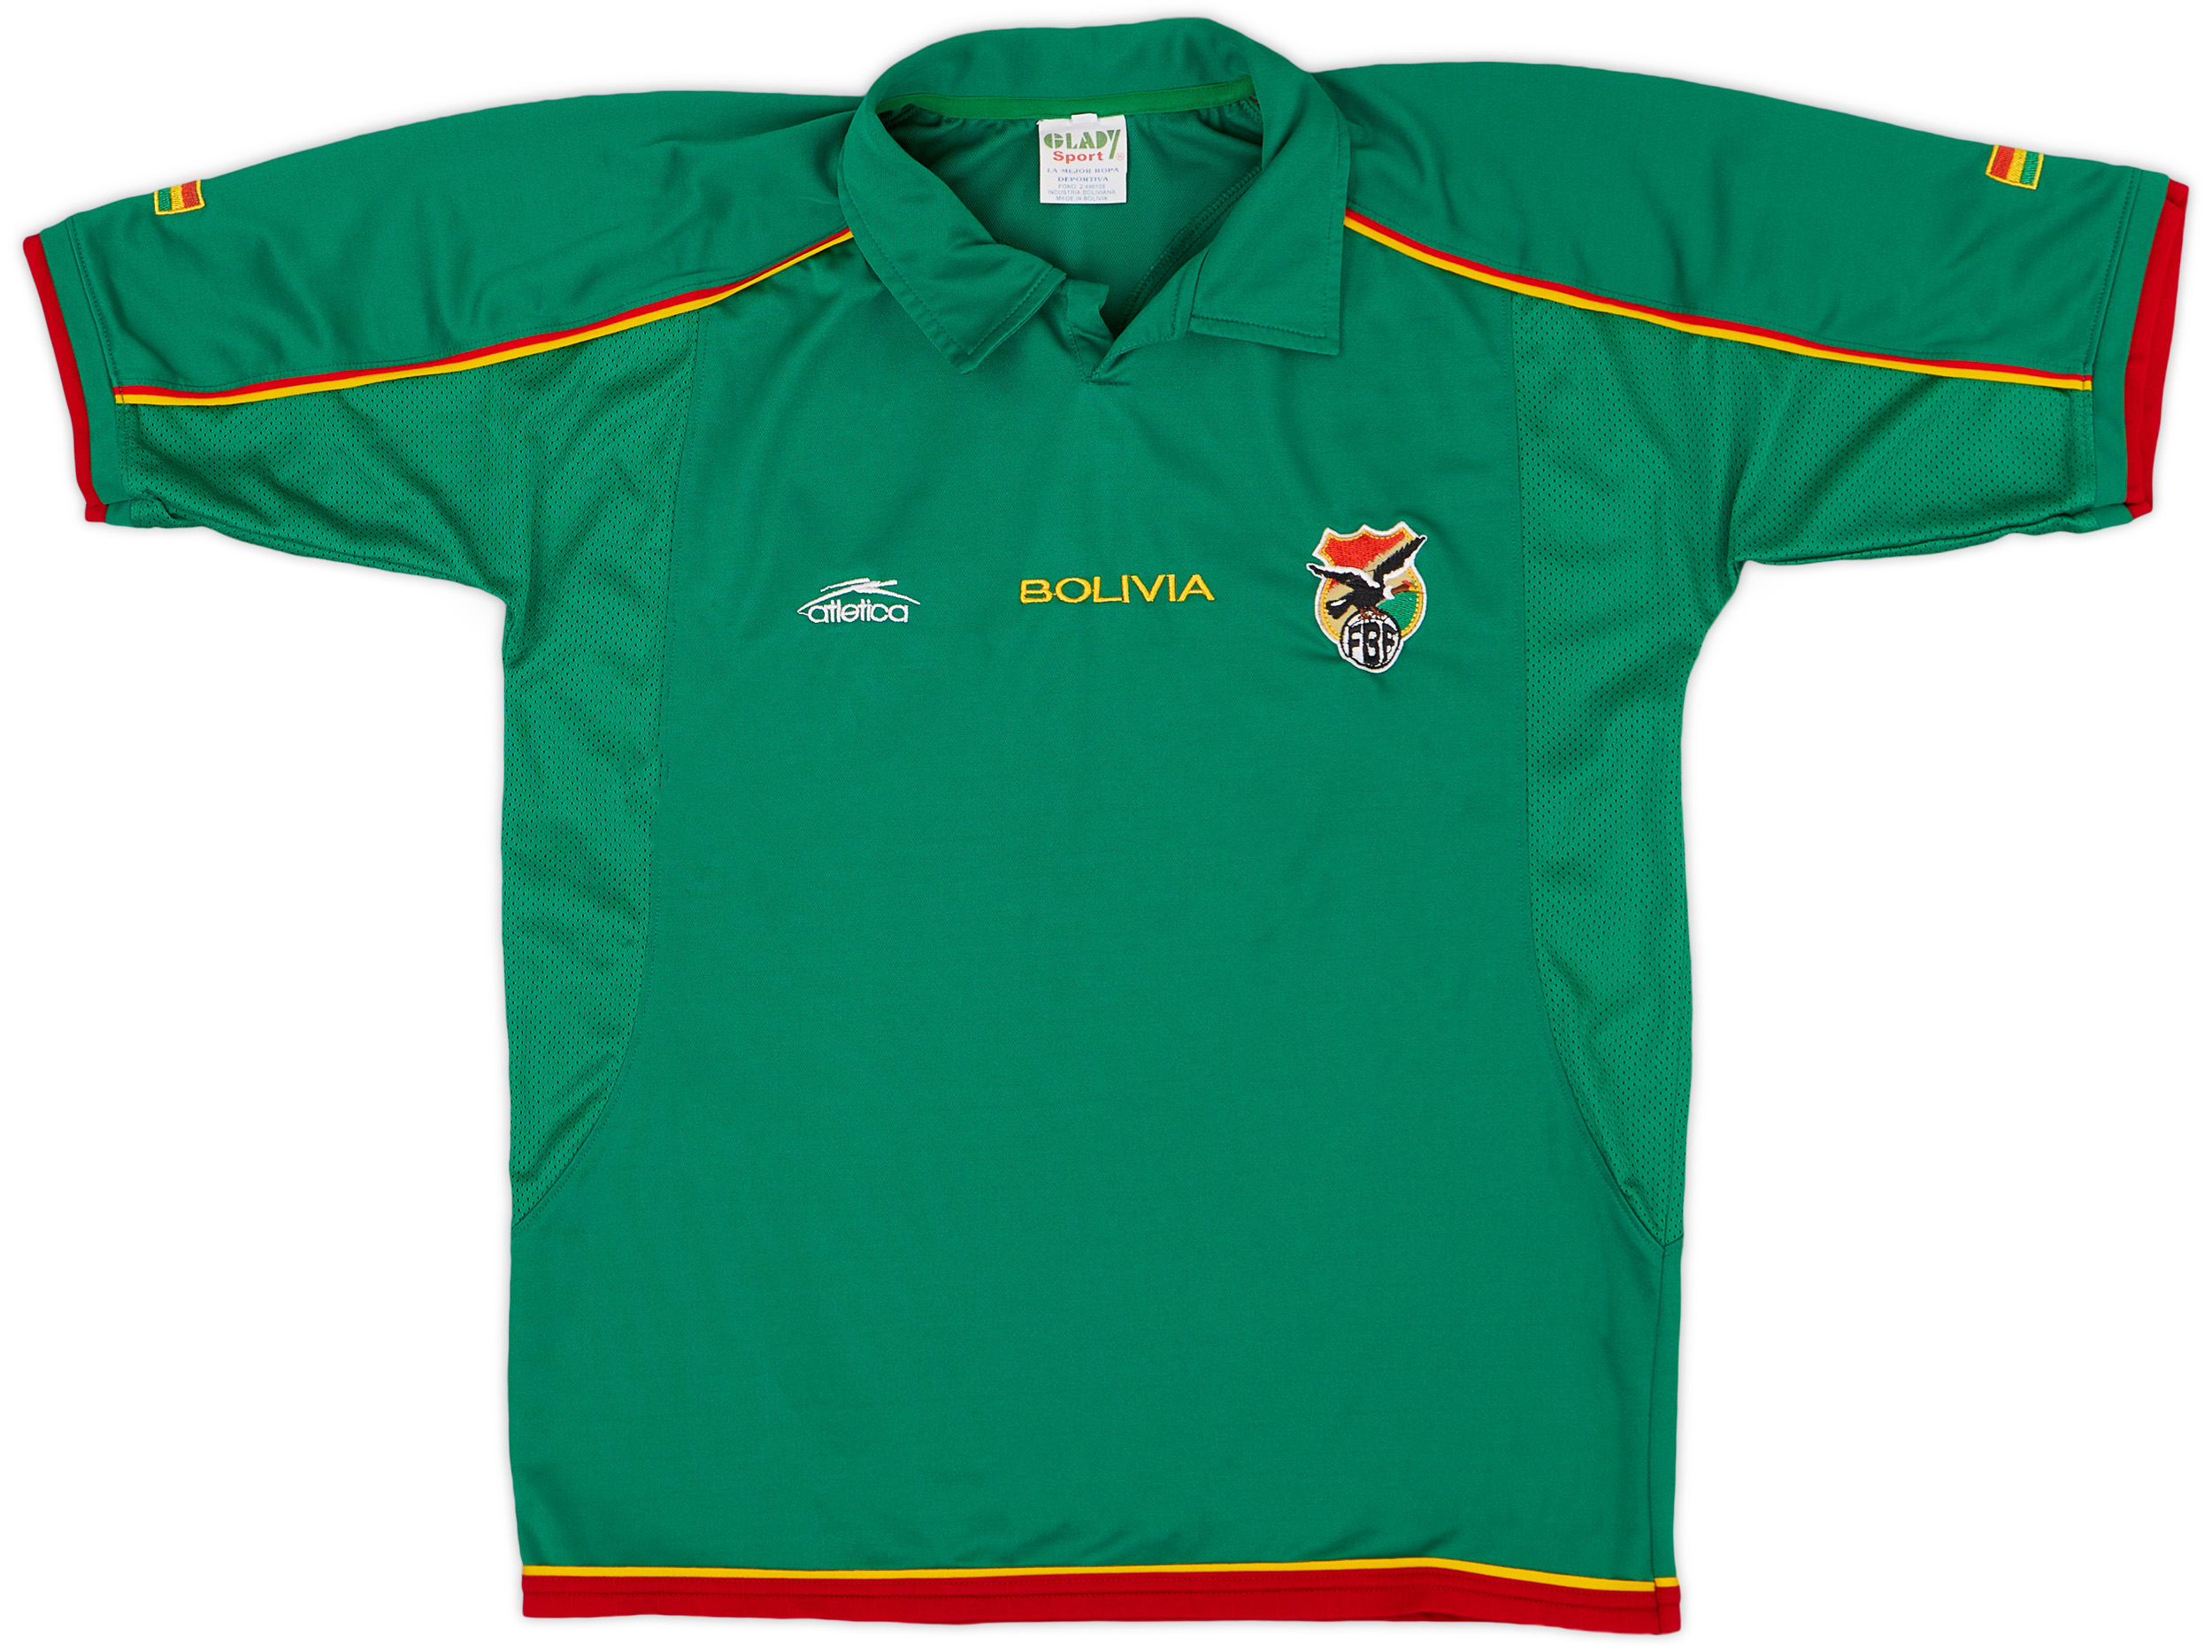 2004 Bolivia Home Shirt - 9/10 - ()